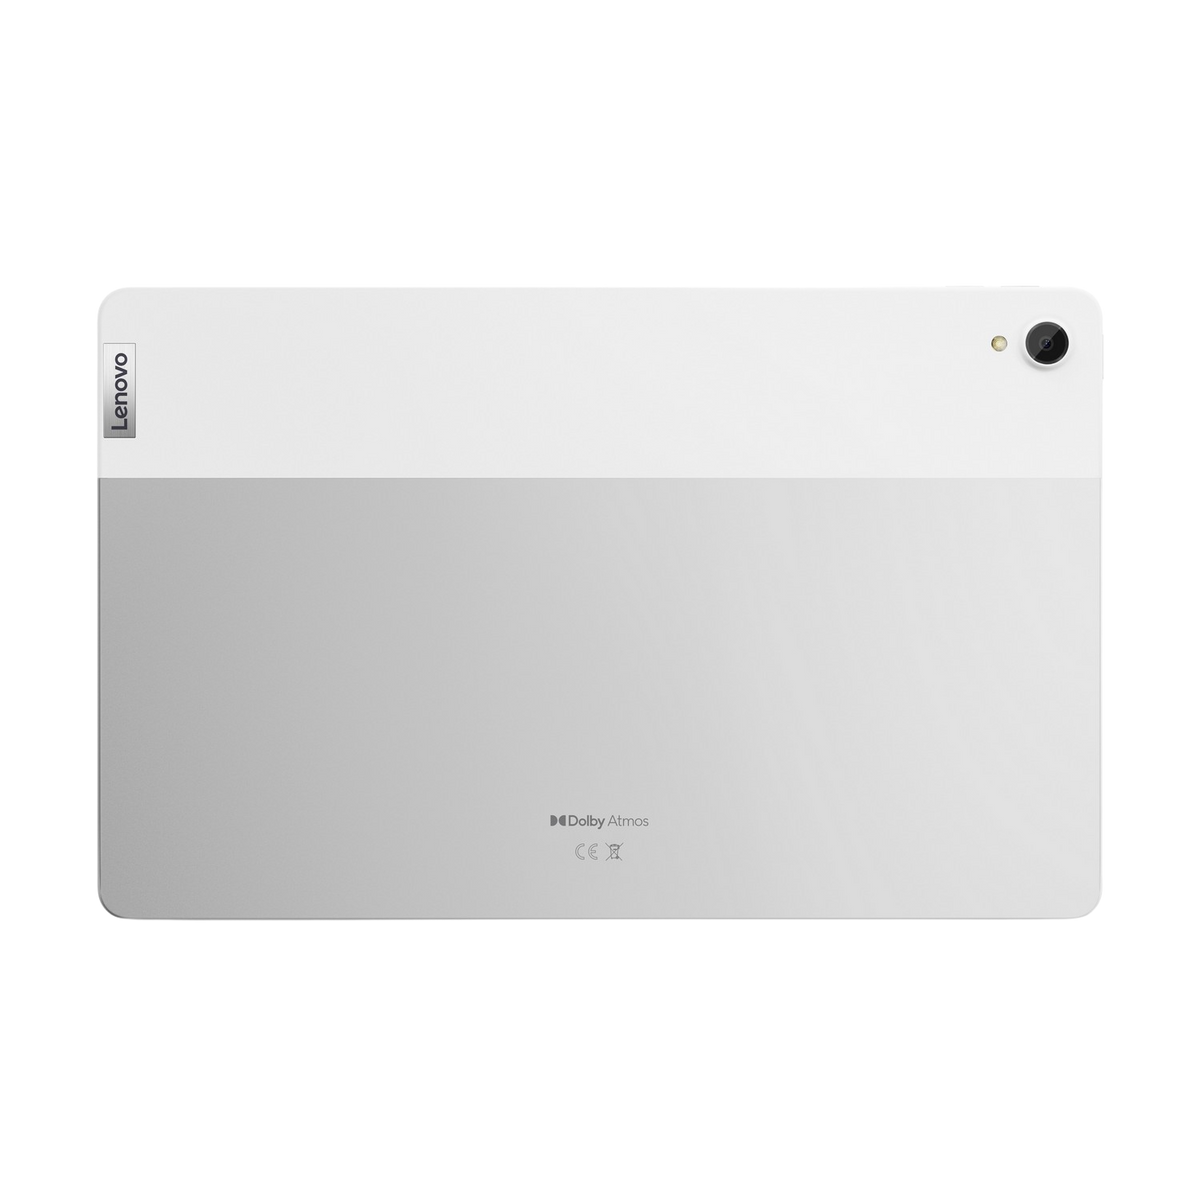 LENOVO ZA940181SE, Tablet, 11 GB, Grau 64 Zoll